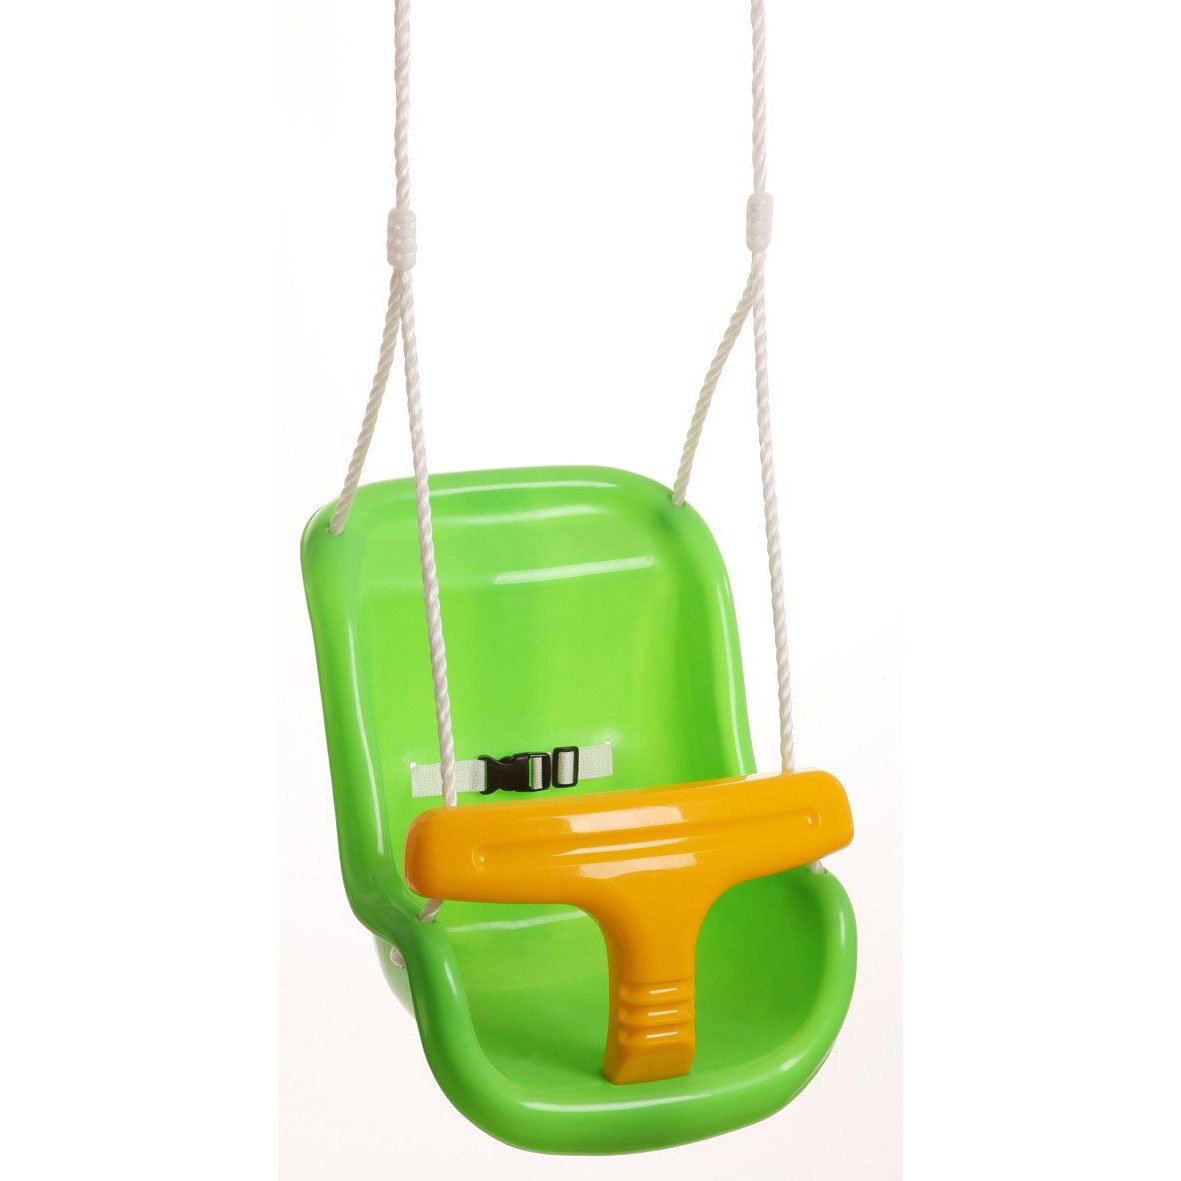 Baby-Sicherheitsschaukel, grün oder rot, Kunststoff